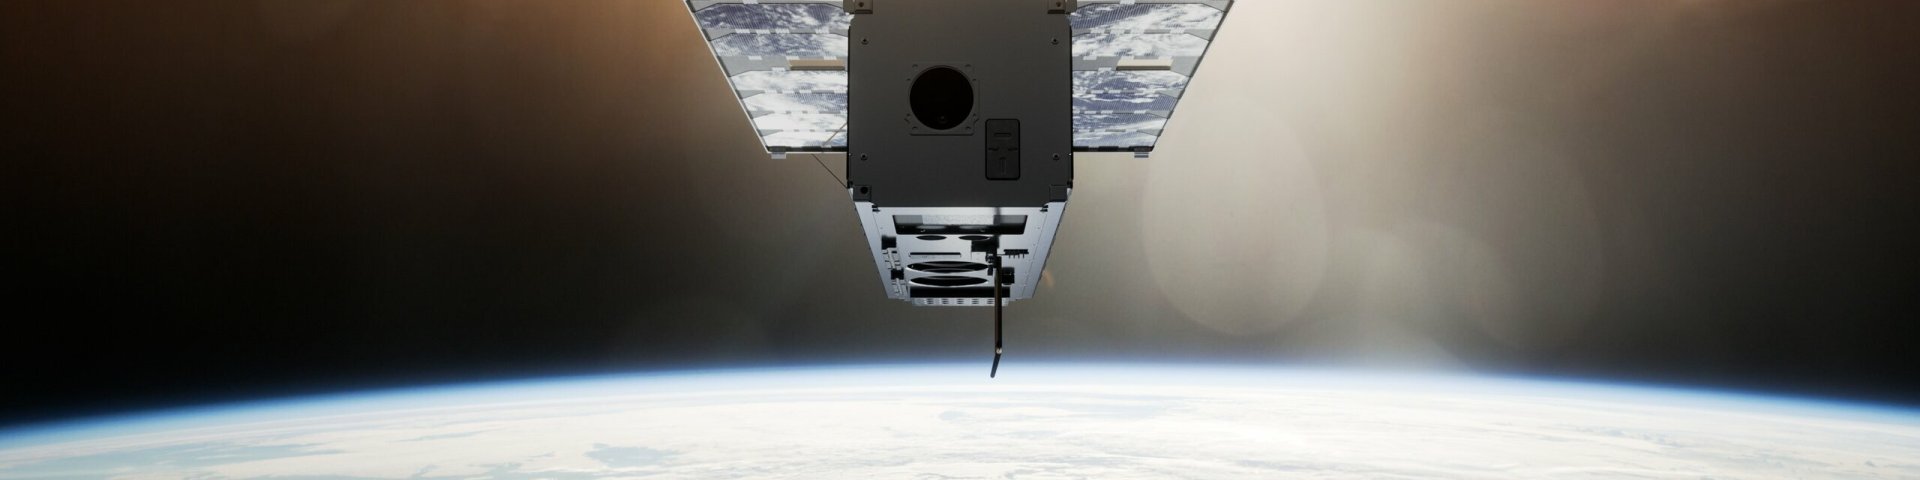 ESTCube-2 orbiidil